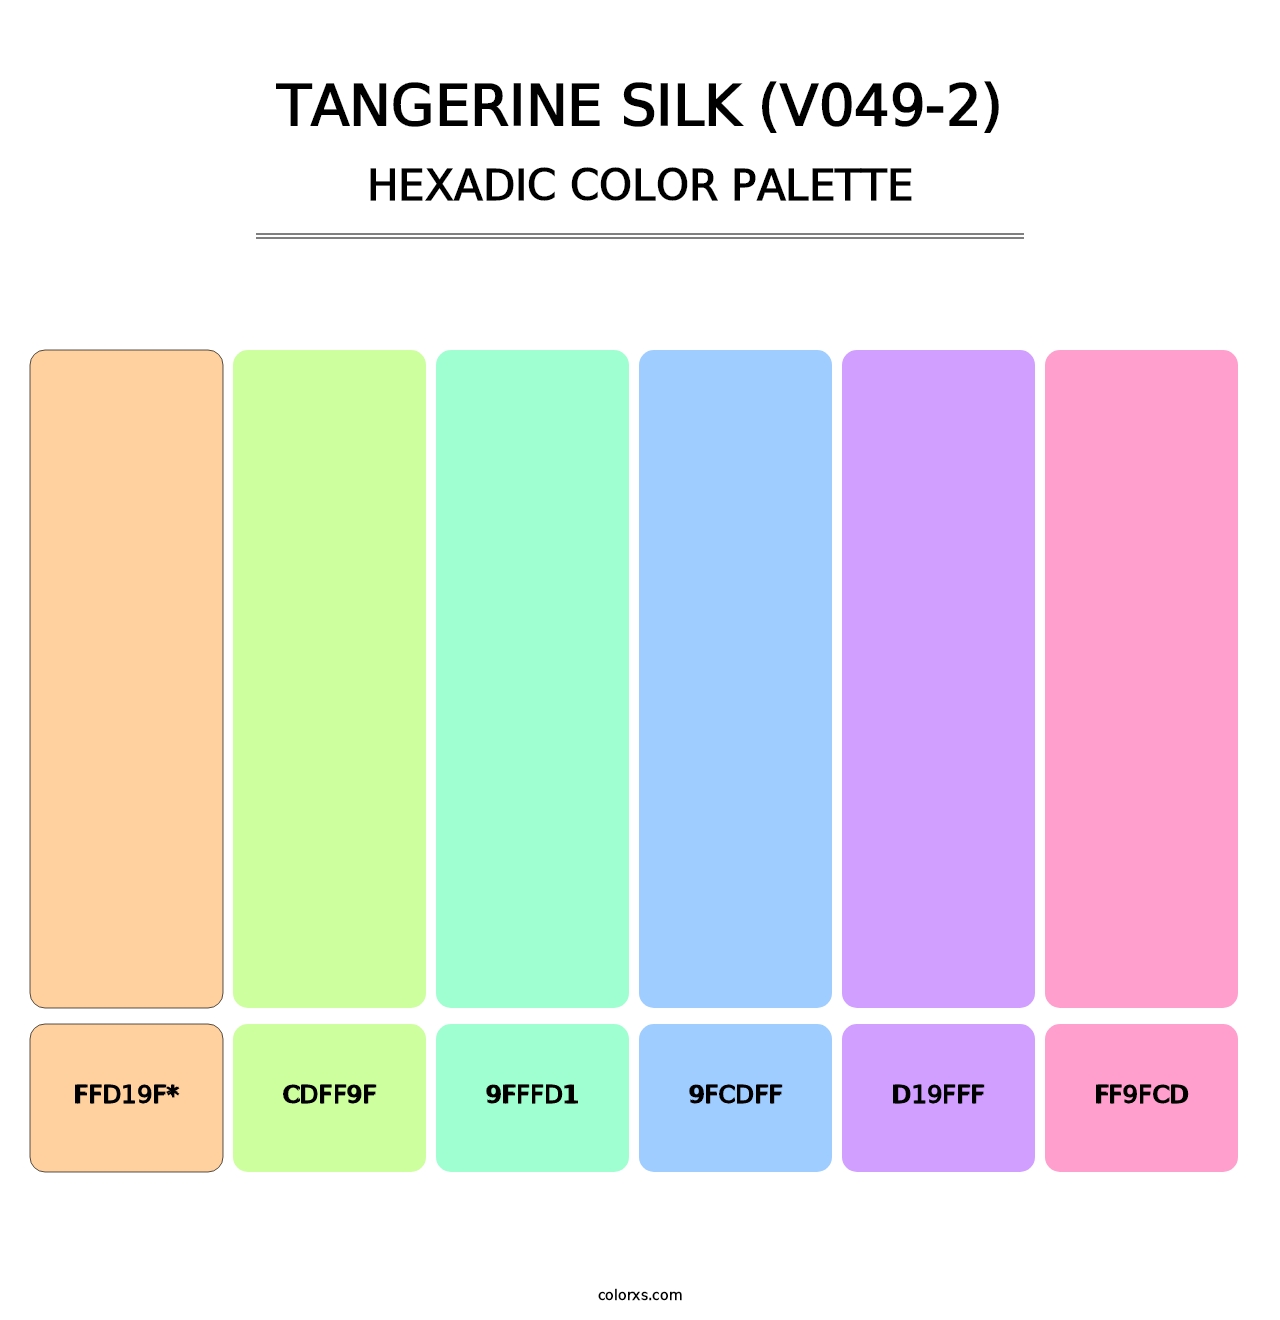 Tangerine Silk (V049-2) - Hexadic Color Palette